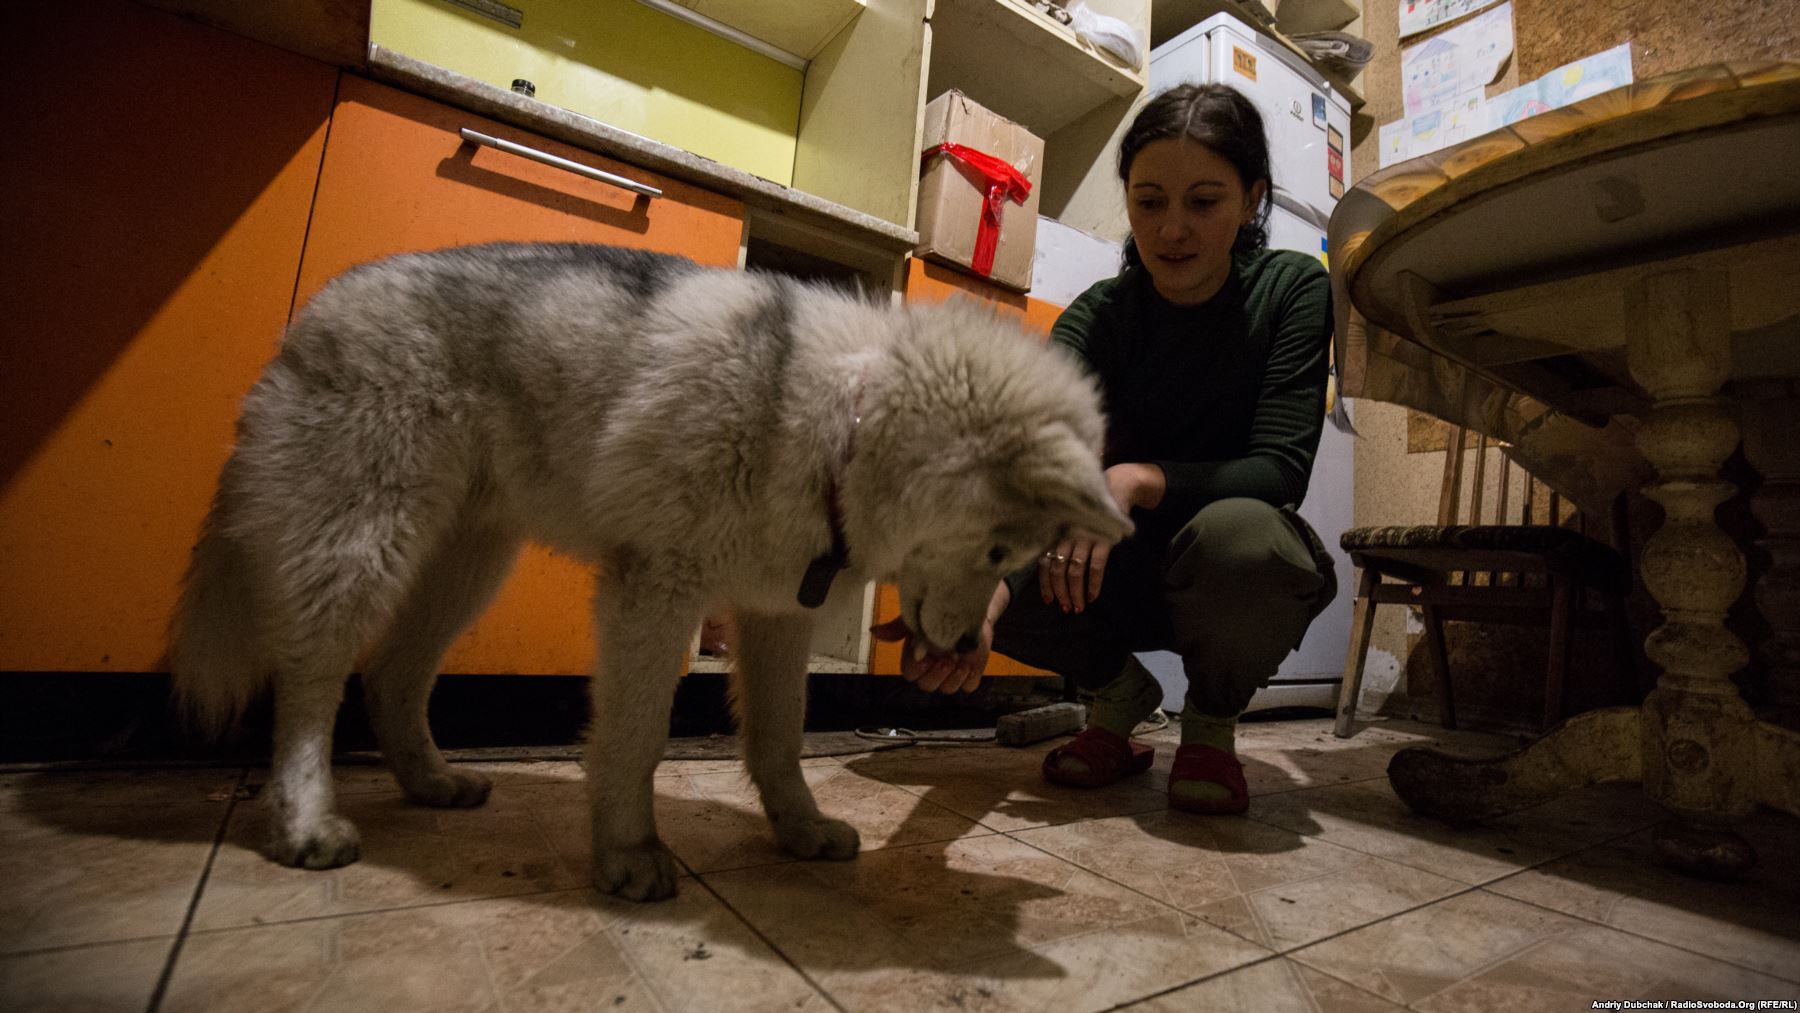 Дарина (23 роки) годує свого улюбленця, песика Рональда. На війні Даша з 2014 року, спочатку як волонтер, потім вже як воїн української армії. Вдома на Дашу чекає 6-річна донька